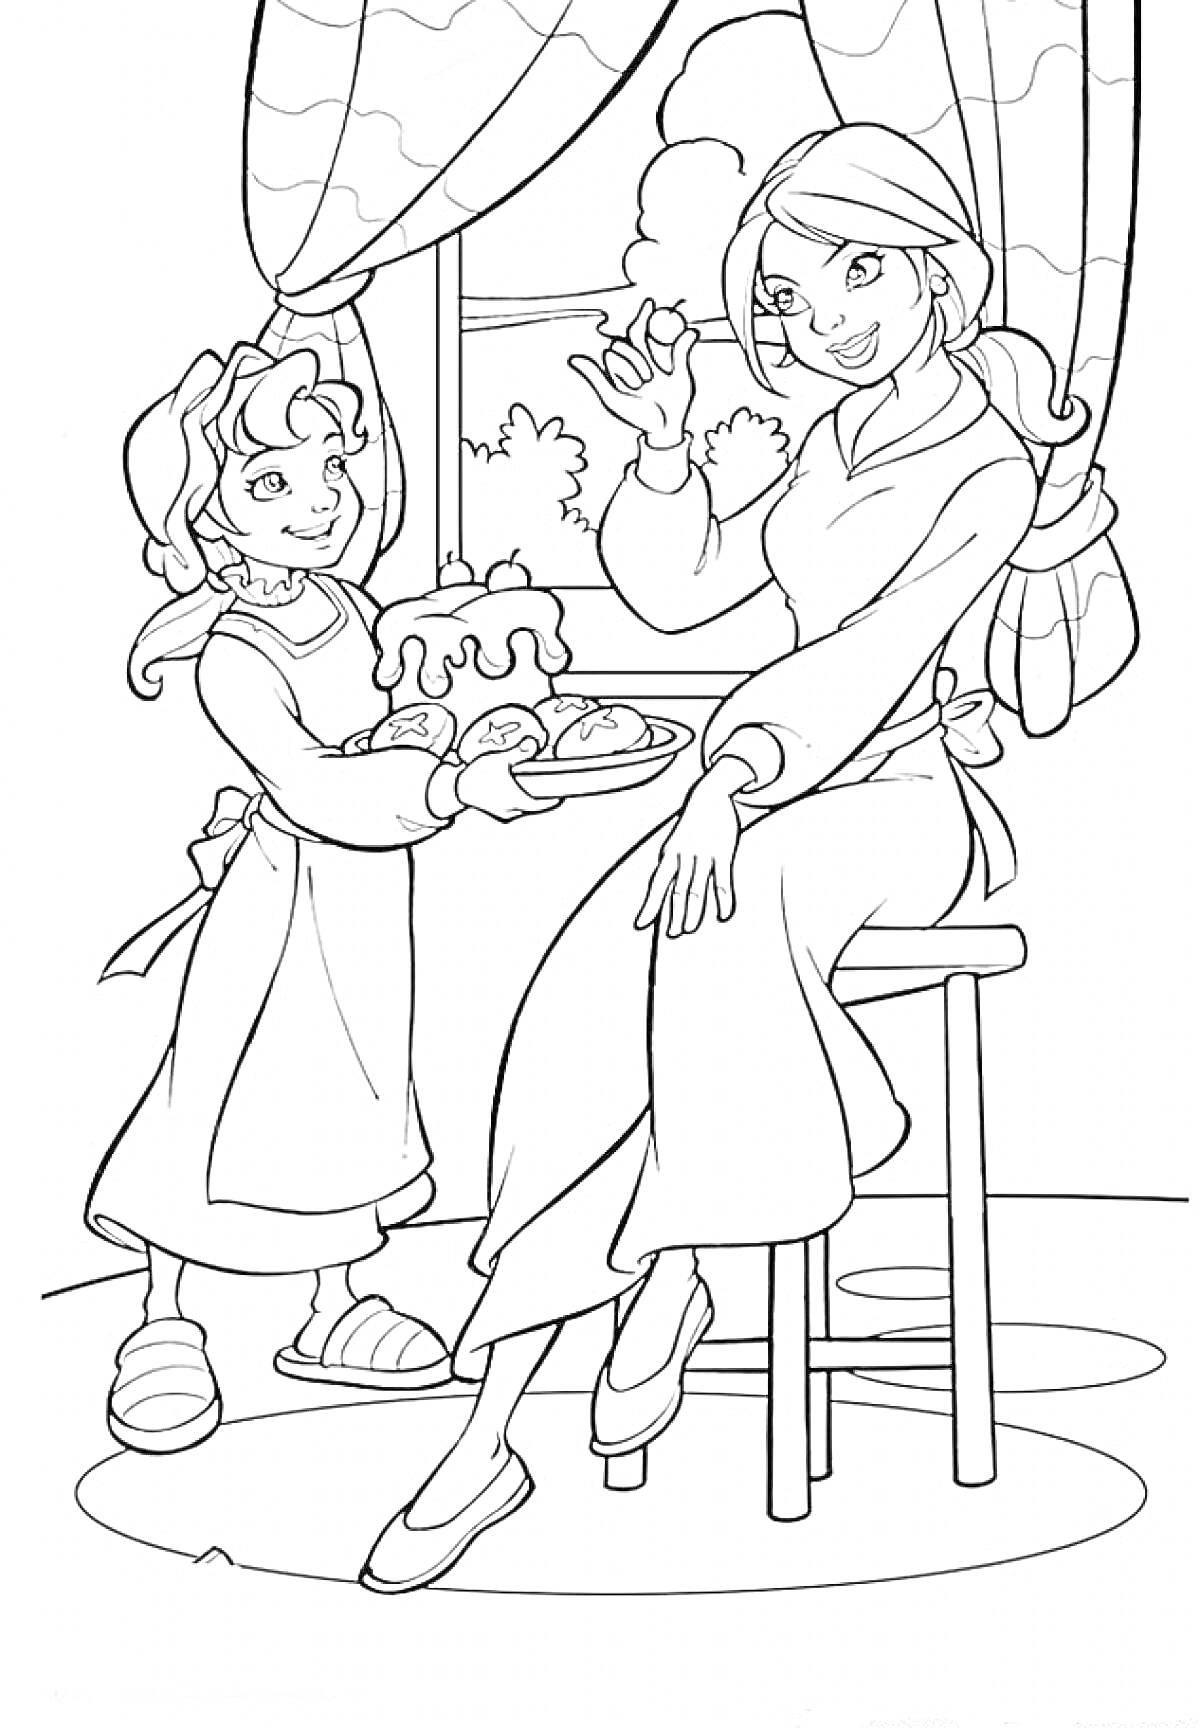 Раскраска Мама и дочка на кухне у окна: дочка подает еду маме, мама сидит на высоком стуле, окно с занавесками, за окном зелёные деревья